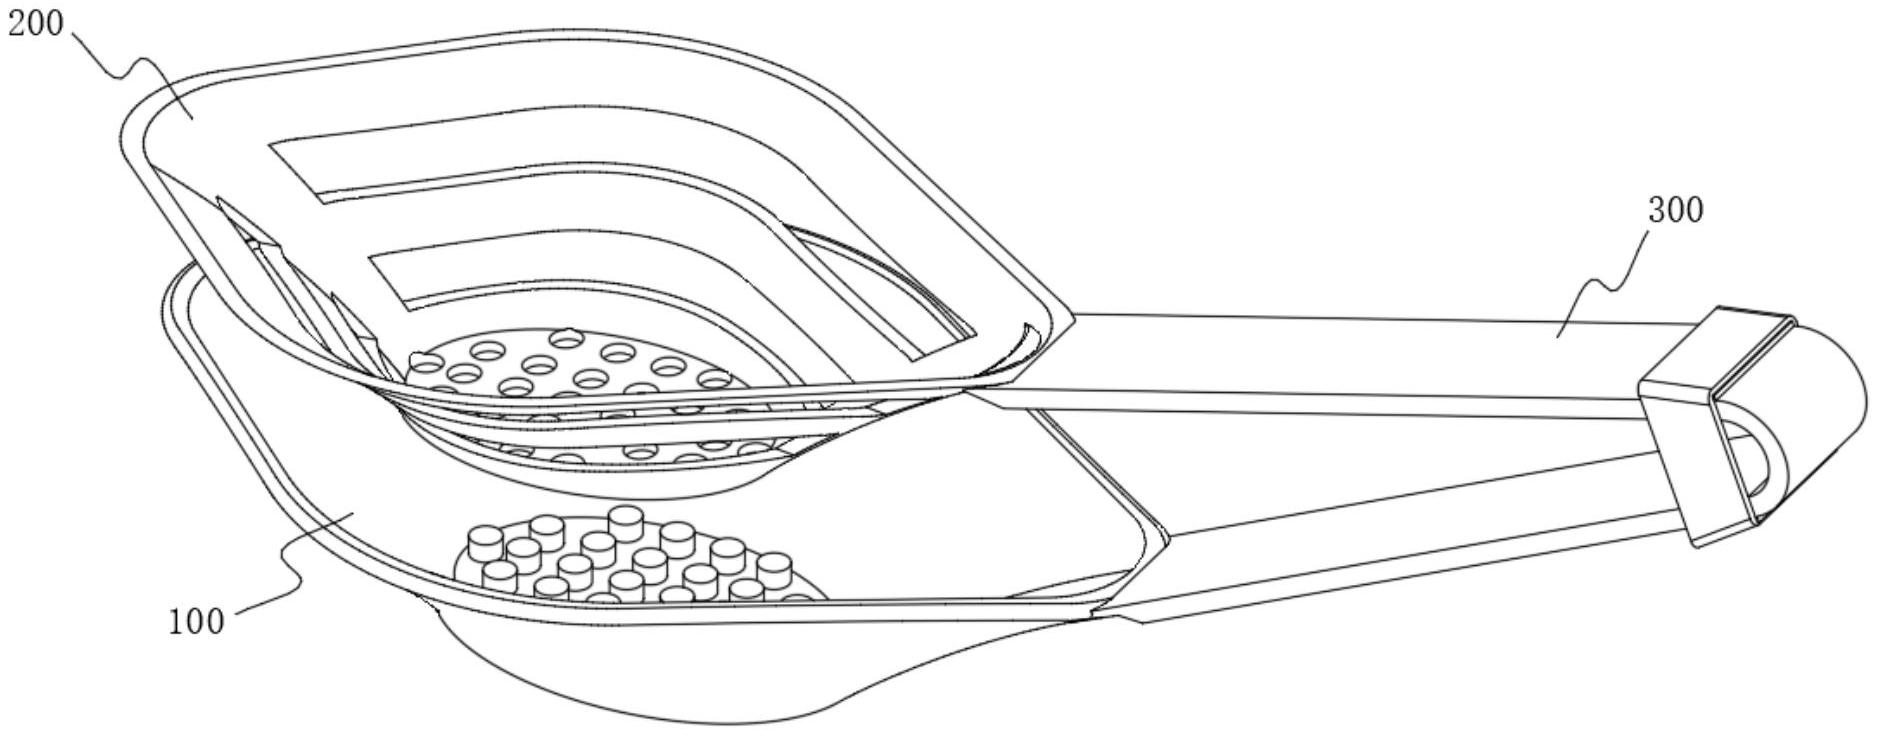 一种餐饮用开合式清理余饭的饭勺专利图